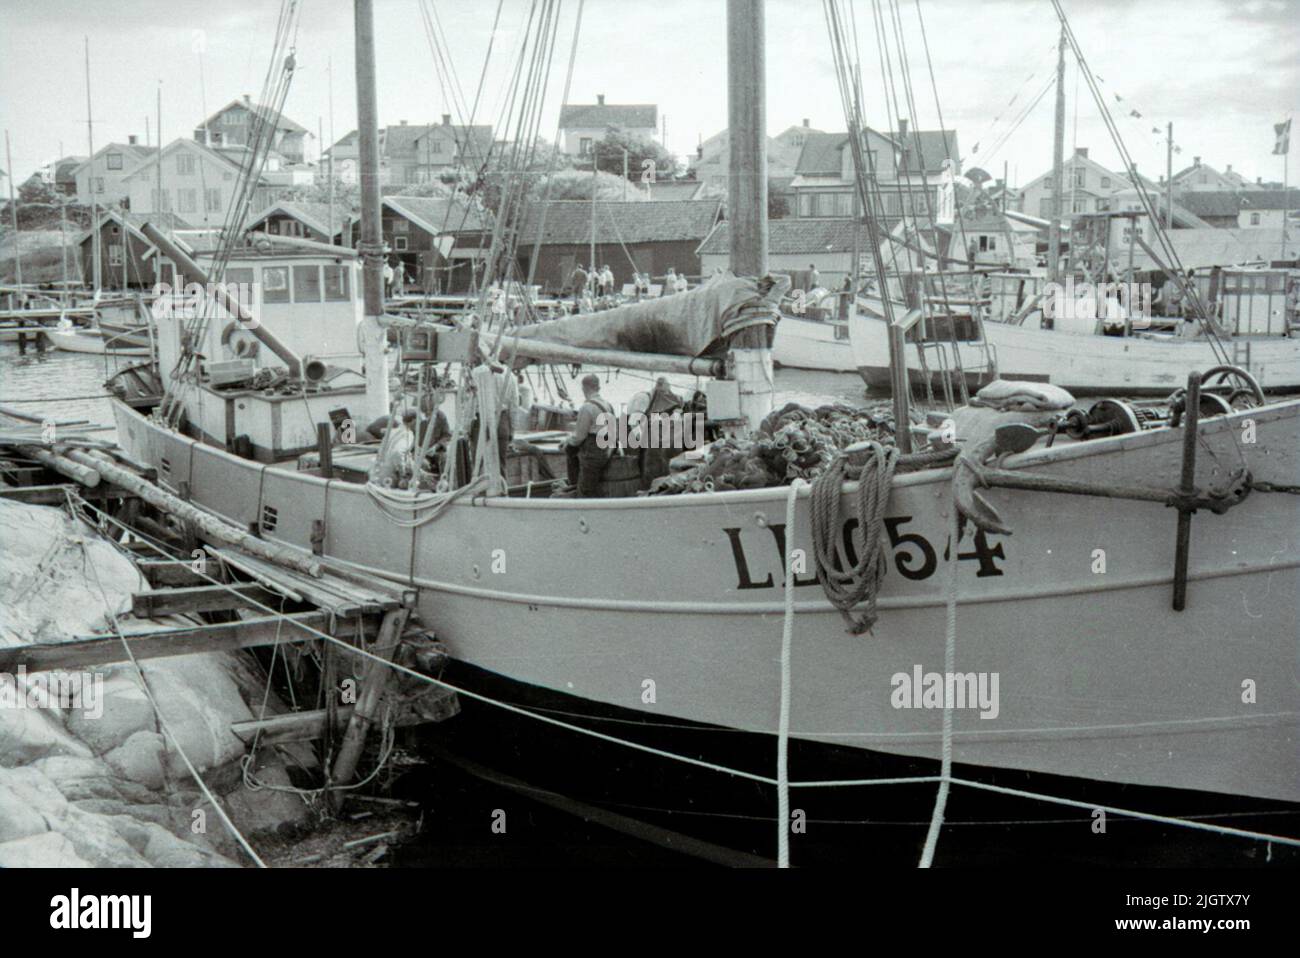 Vorbereitungen für den isländischen Fischfang an Bord LL 1054 Knape, Hafen Käringö "Vorbereitung für den isländischen Fisch. Das Garn wird in Ordnung hergestellt. Das Boot ist vor dem isländischen Angeln fertig. Das Garn wird überprüft, und das große Garnkabel wird an Bord genommen. Auf dem Deck ist Carl -Birger Karlsson in voller Aktivität. Das Boot gehörte August Berlin (1890 - 1961) und Carl -Birger Karlsson (1892 - 1960) in Partkrederi.ll 1054 Knape, Reg. Nr. 7667, im isländischen Fischfang waren die Sommer 1949 - 1954. Im Winter gab das Boot auf die Schifffahrt mit Fracht zwischen Schweden - Deutschland, manchmal England, Finnland. Stockfoto